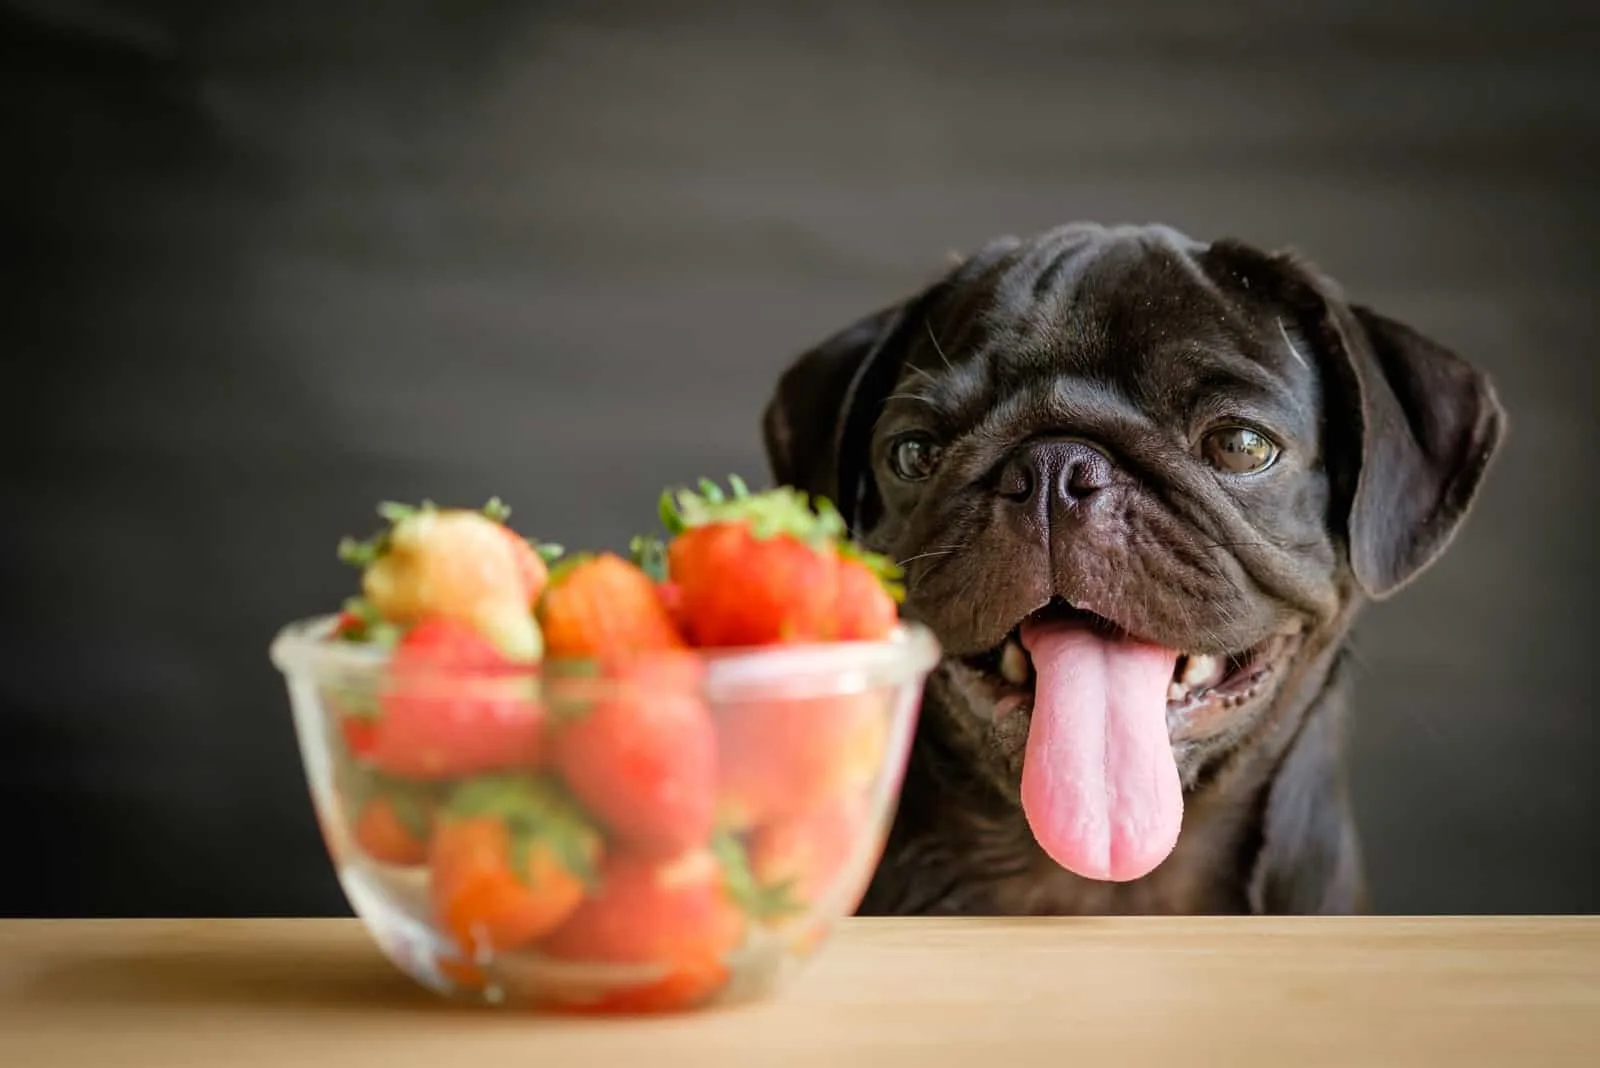 Der schwarze Hund streckt die Zunge heraus und schaut auf die Erdbeerschale